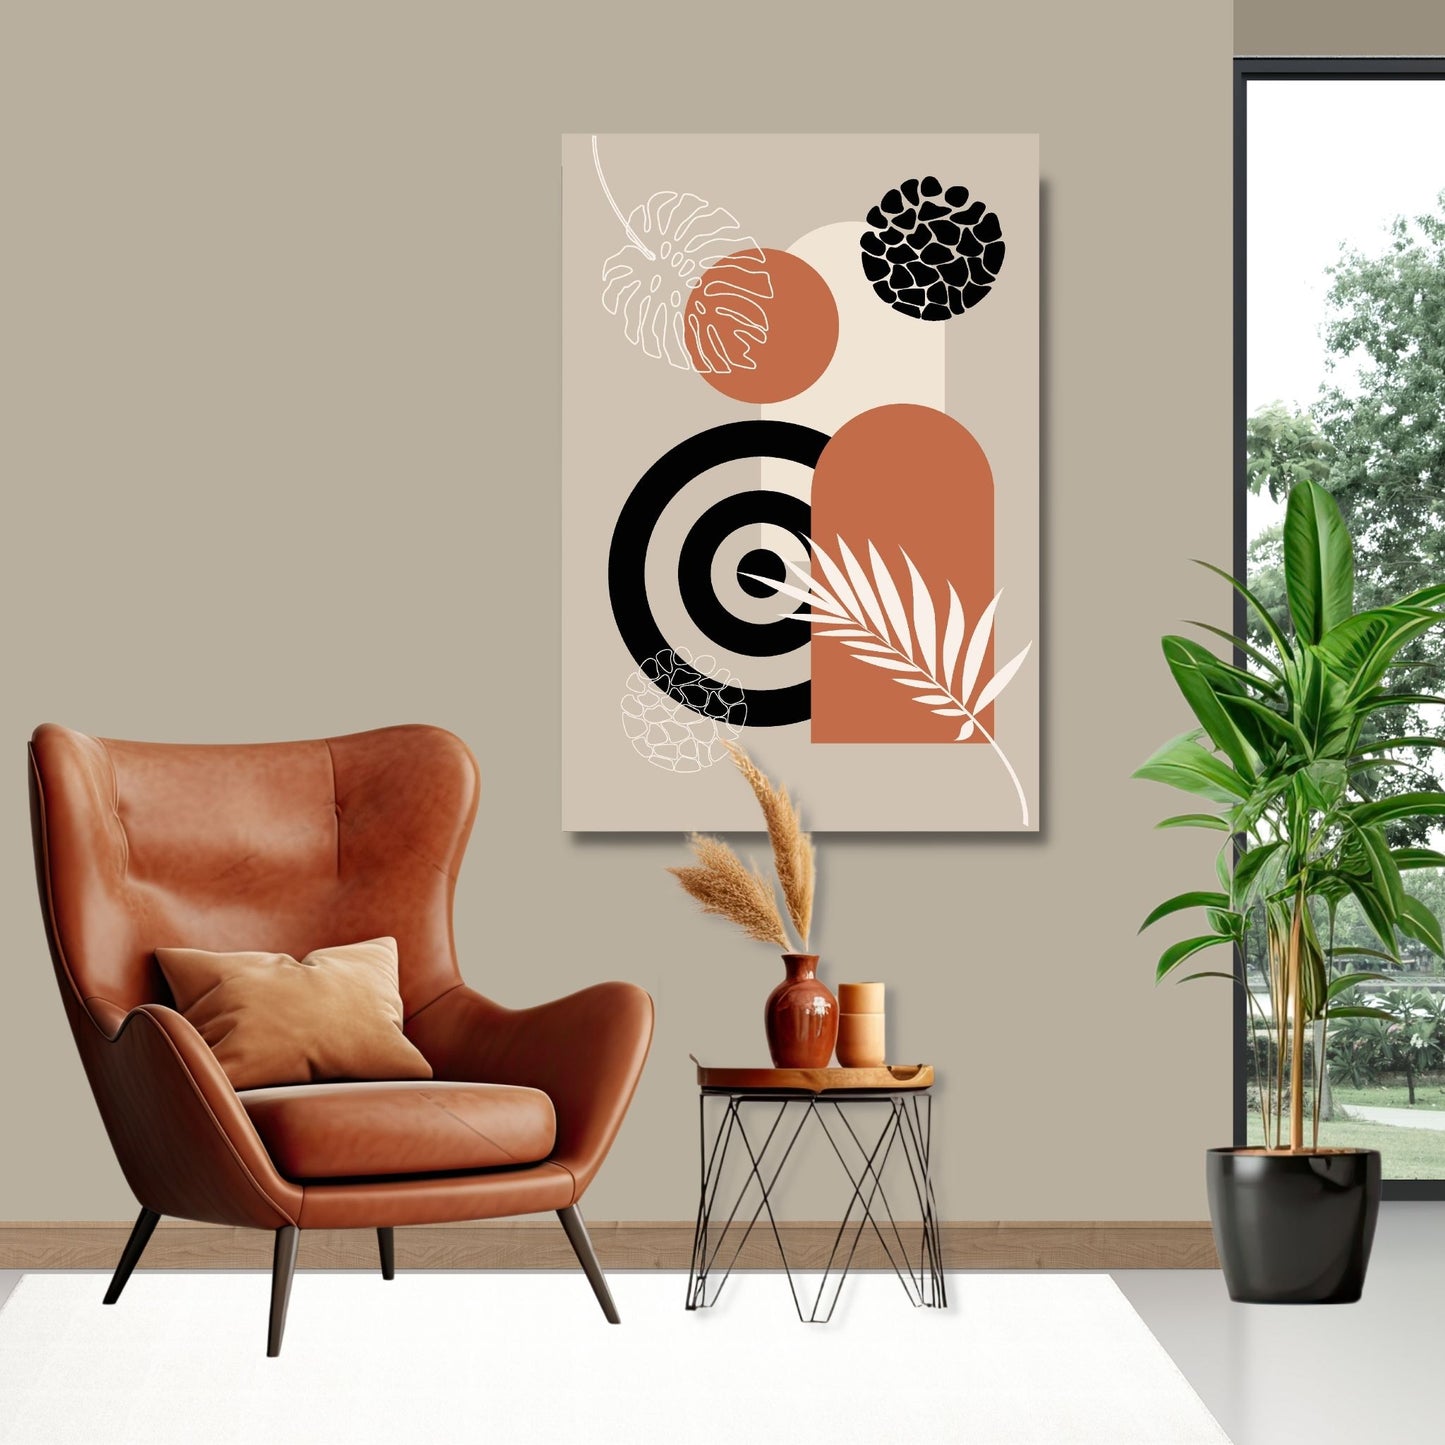 Abstract Shapes No2.3 i sort, beige, rust og hvite fargenyanser. Plakat har en hvit kant om gir dybde og fremhever motivet. Illustrasjon som viser motiv på lerret.